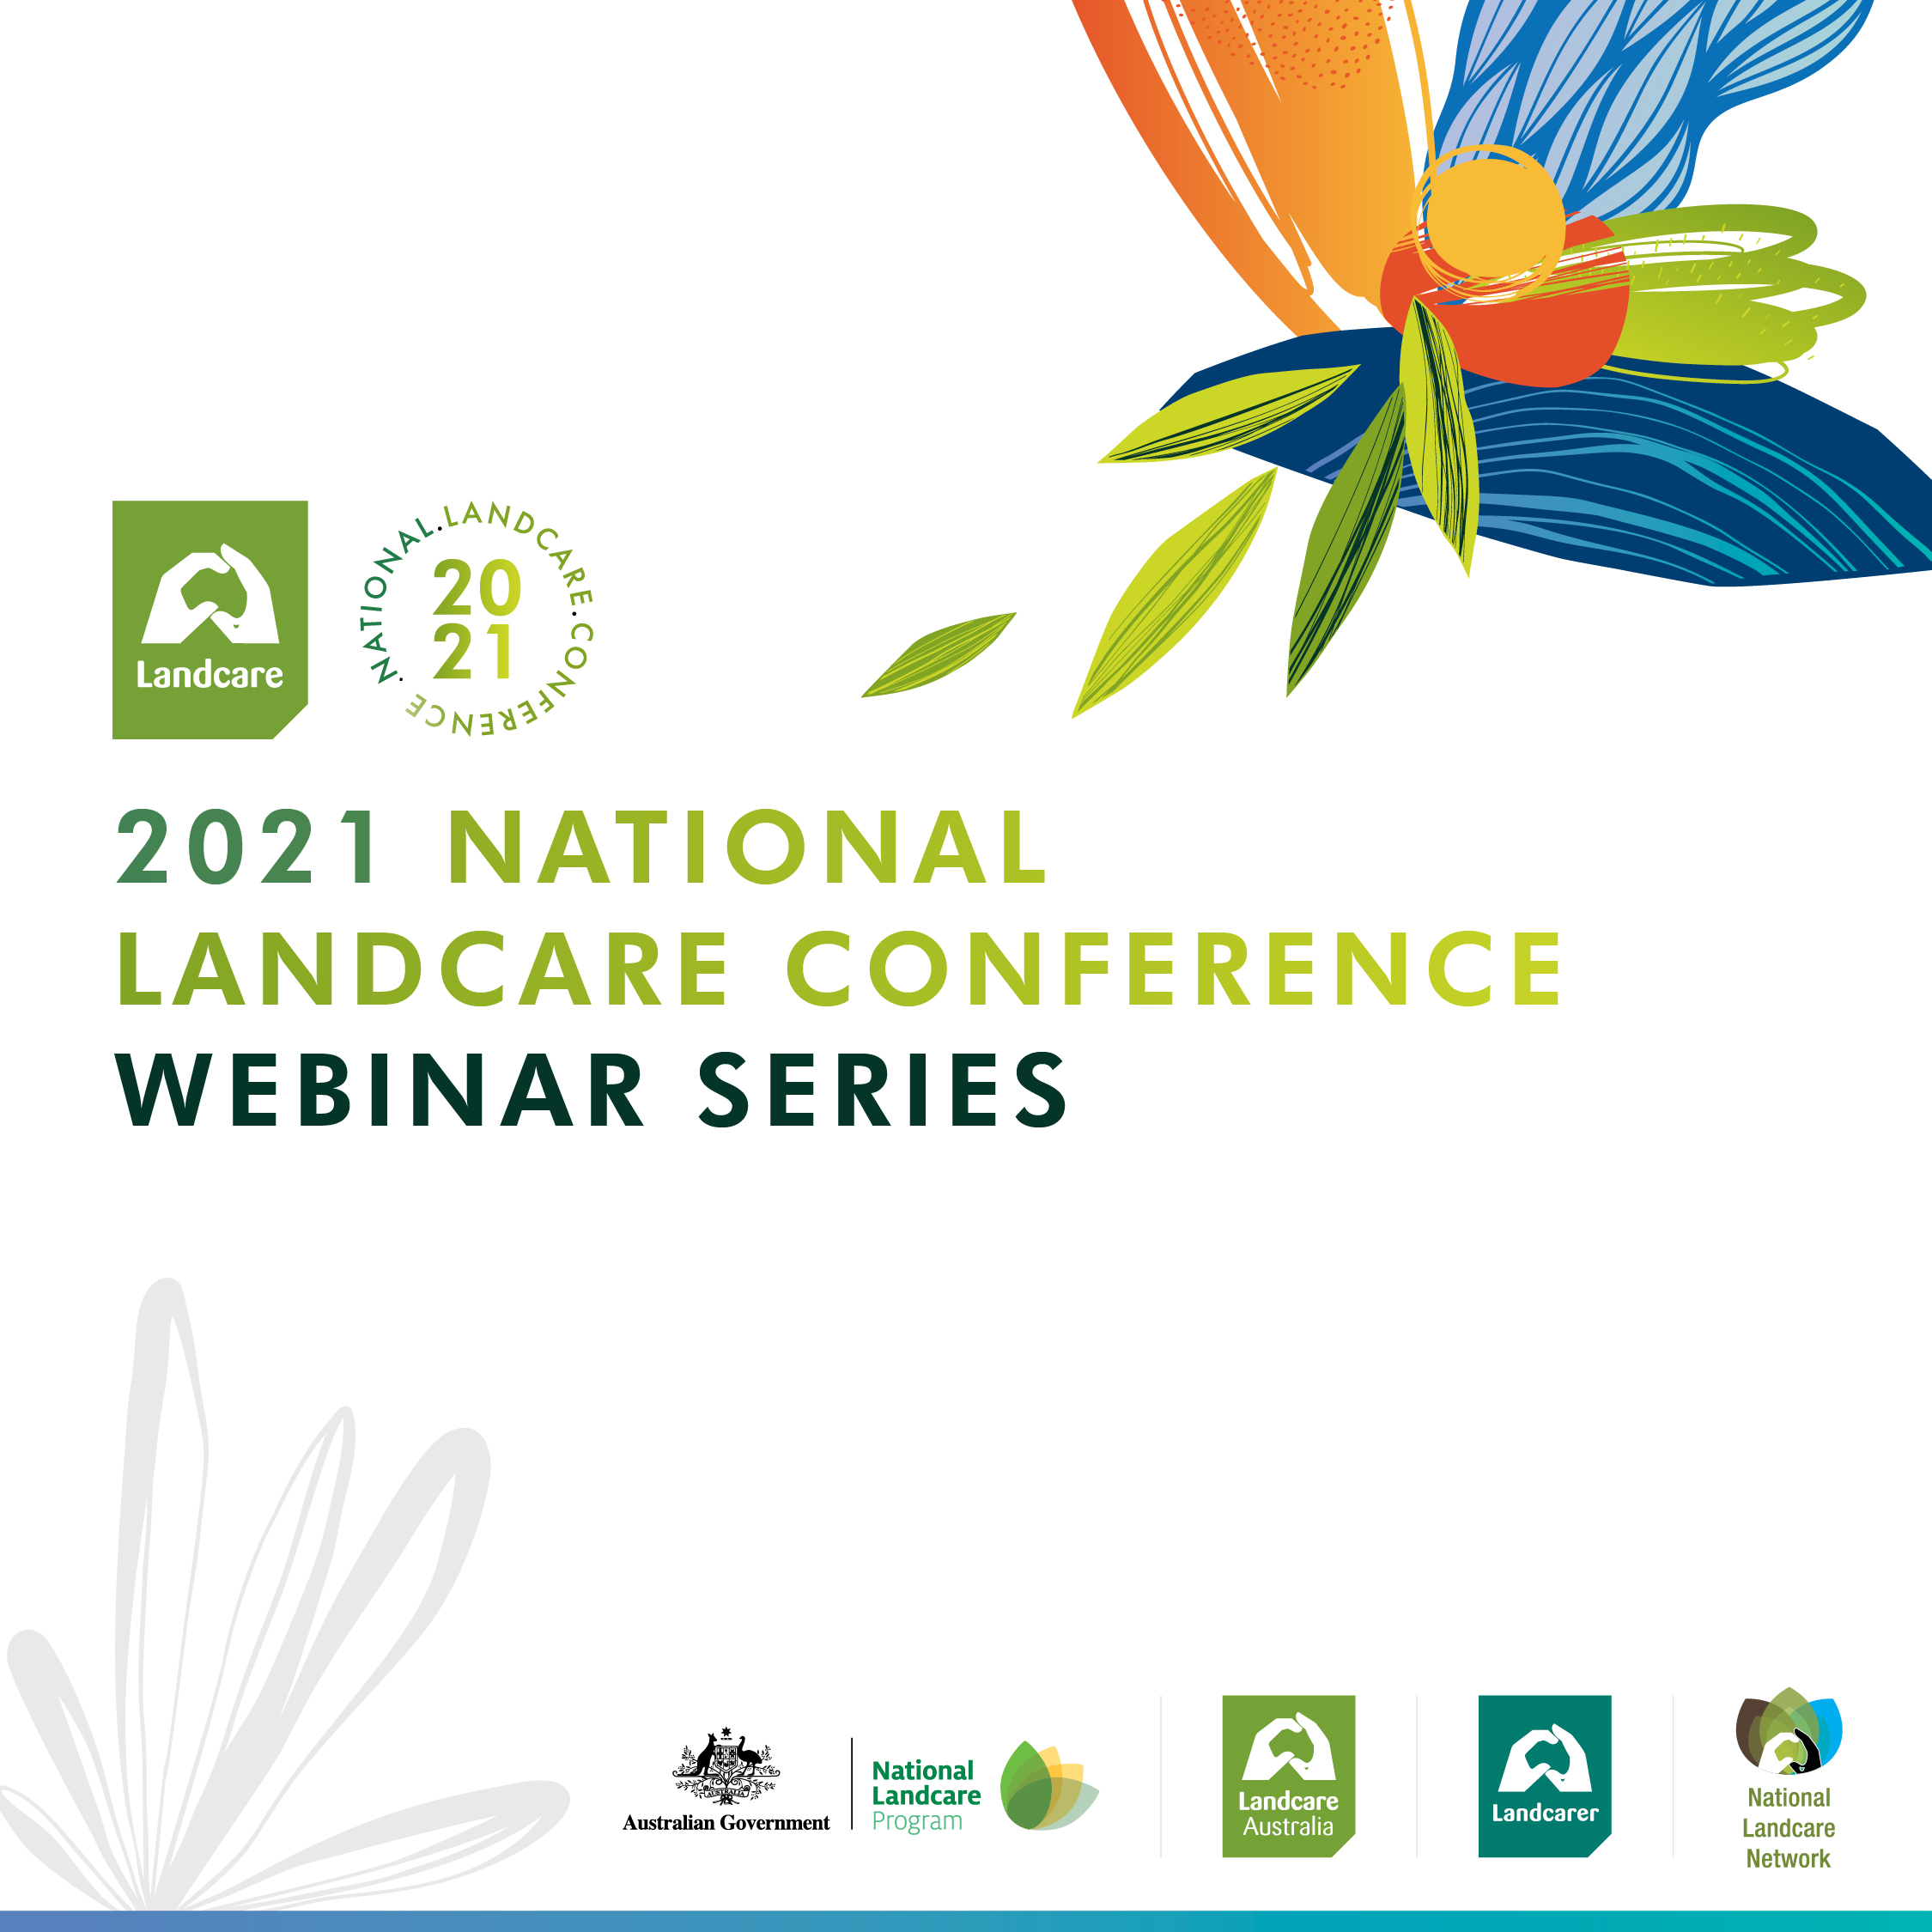 National Landcare Conference webinars